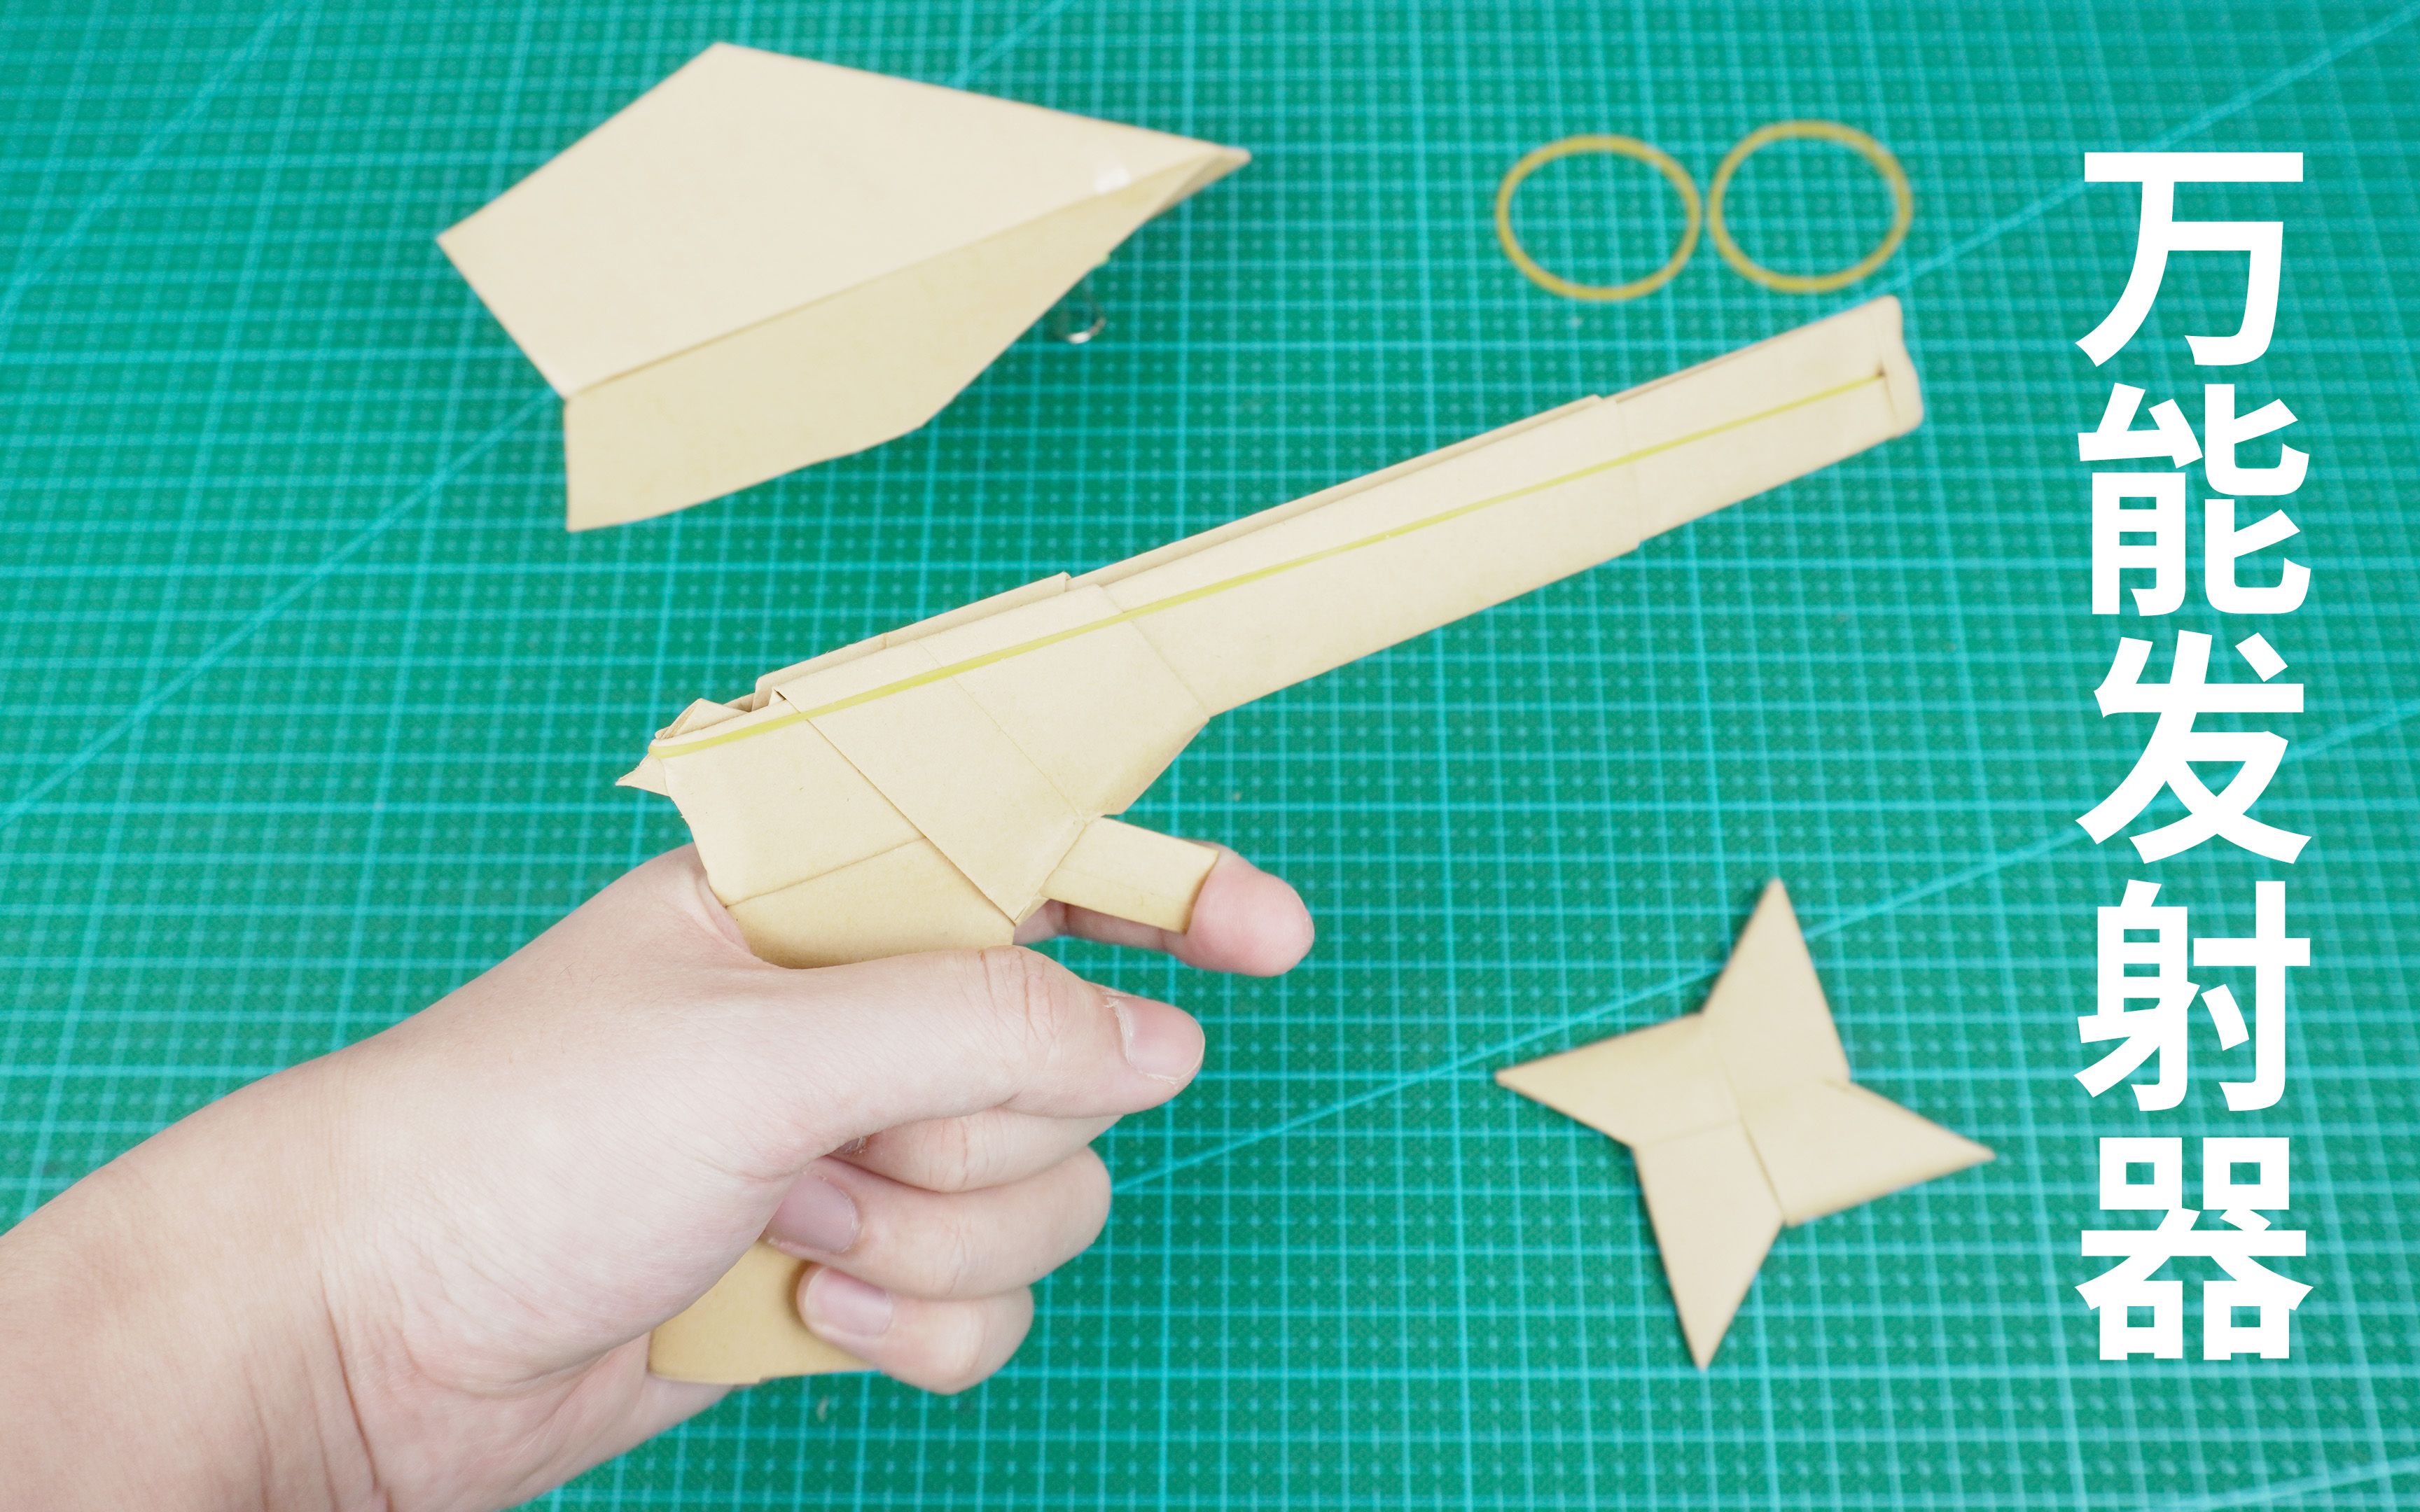 用纸做的万能发射器,纸飞机和手里剑更好玩了!